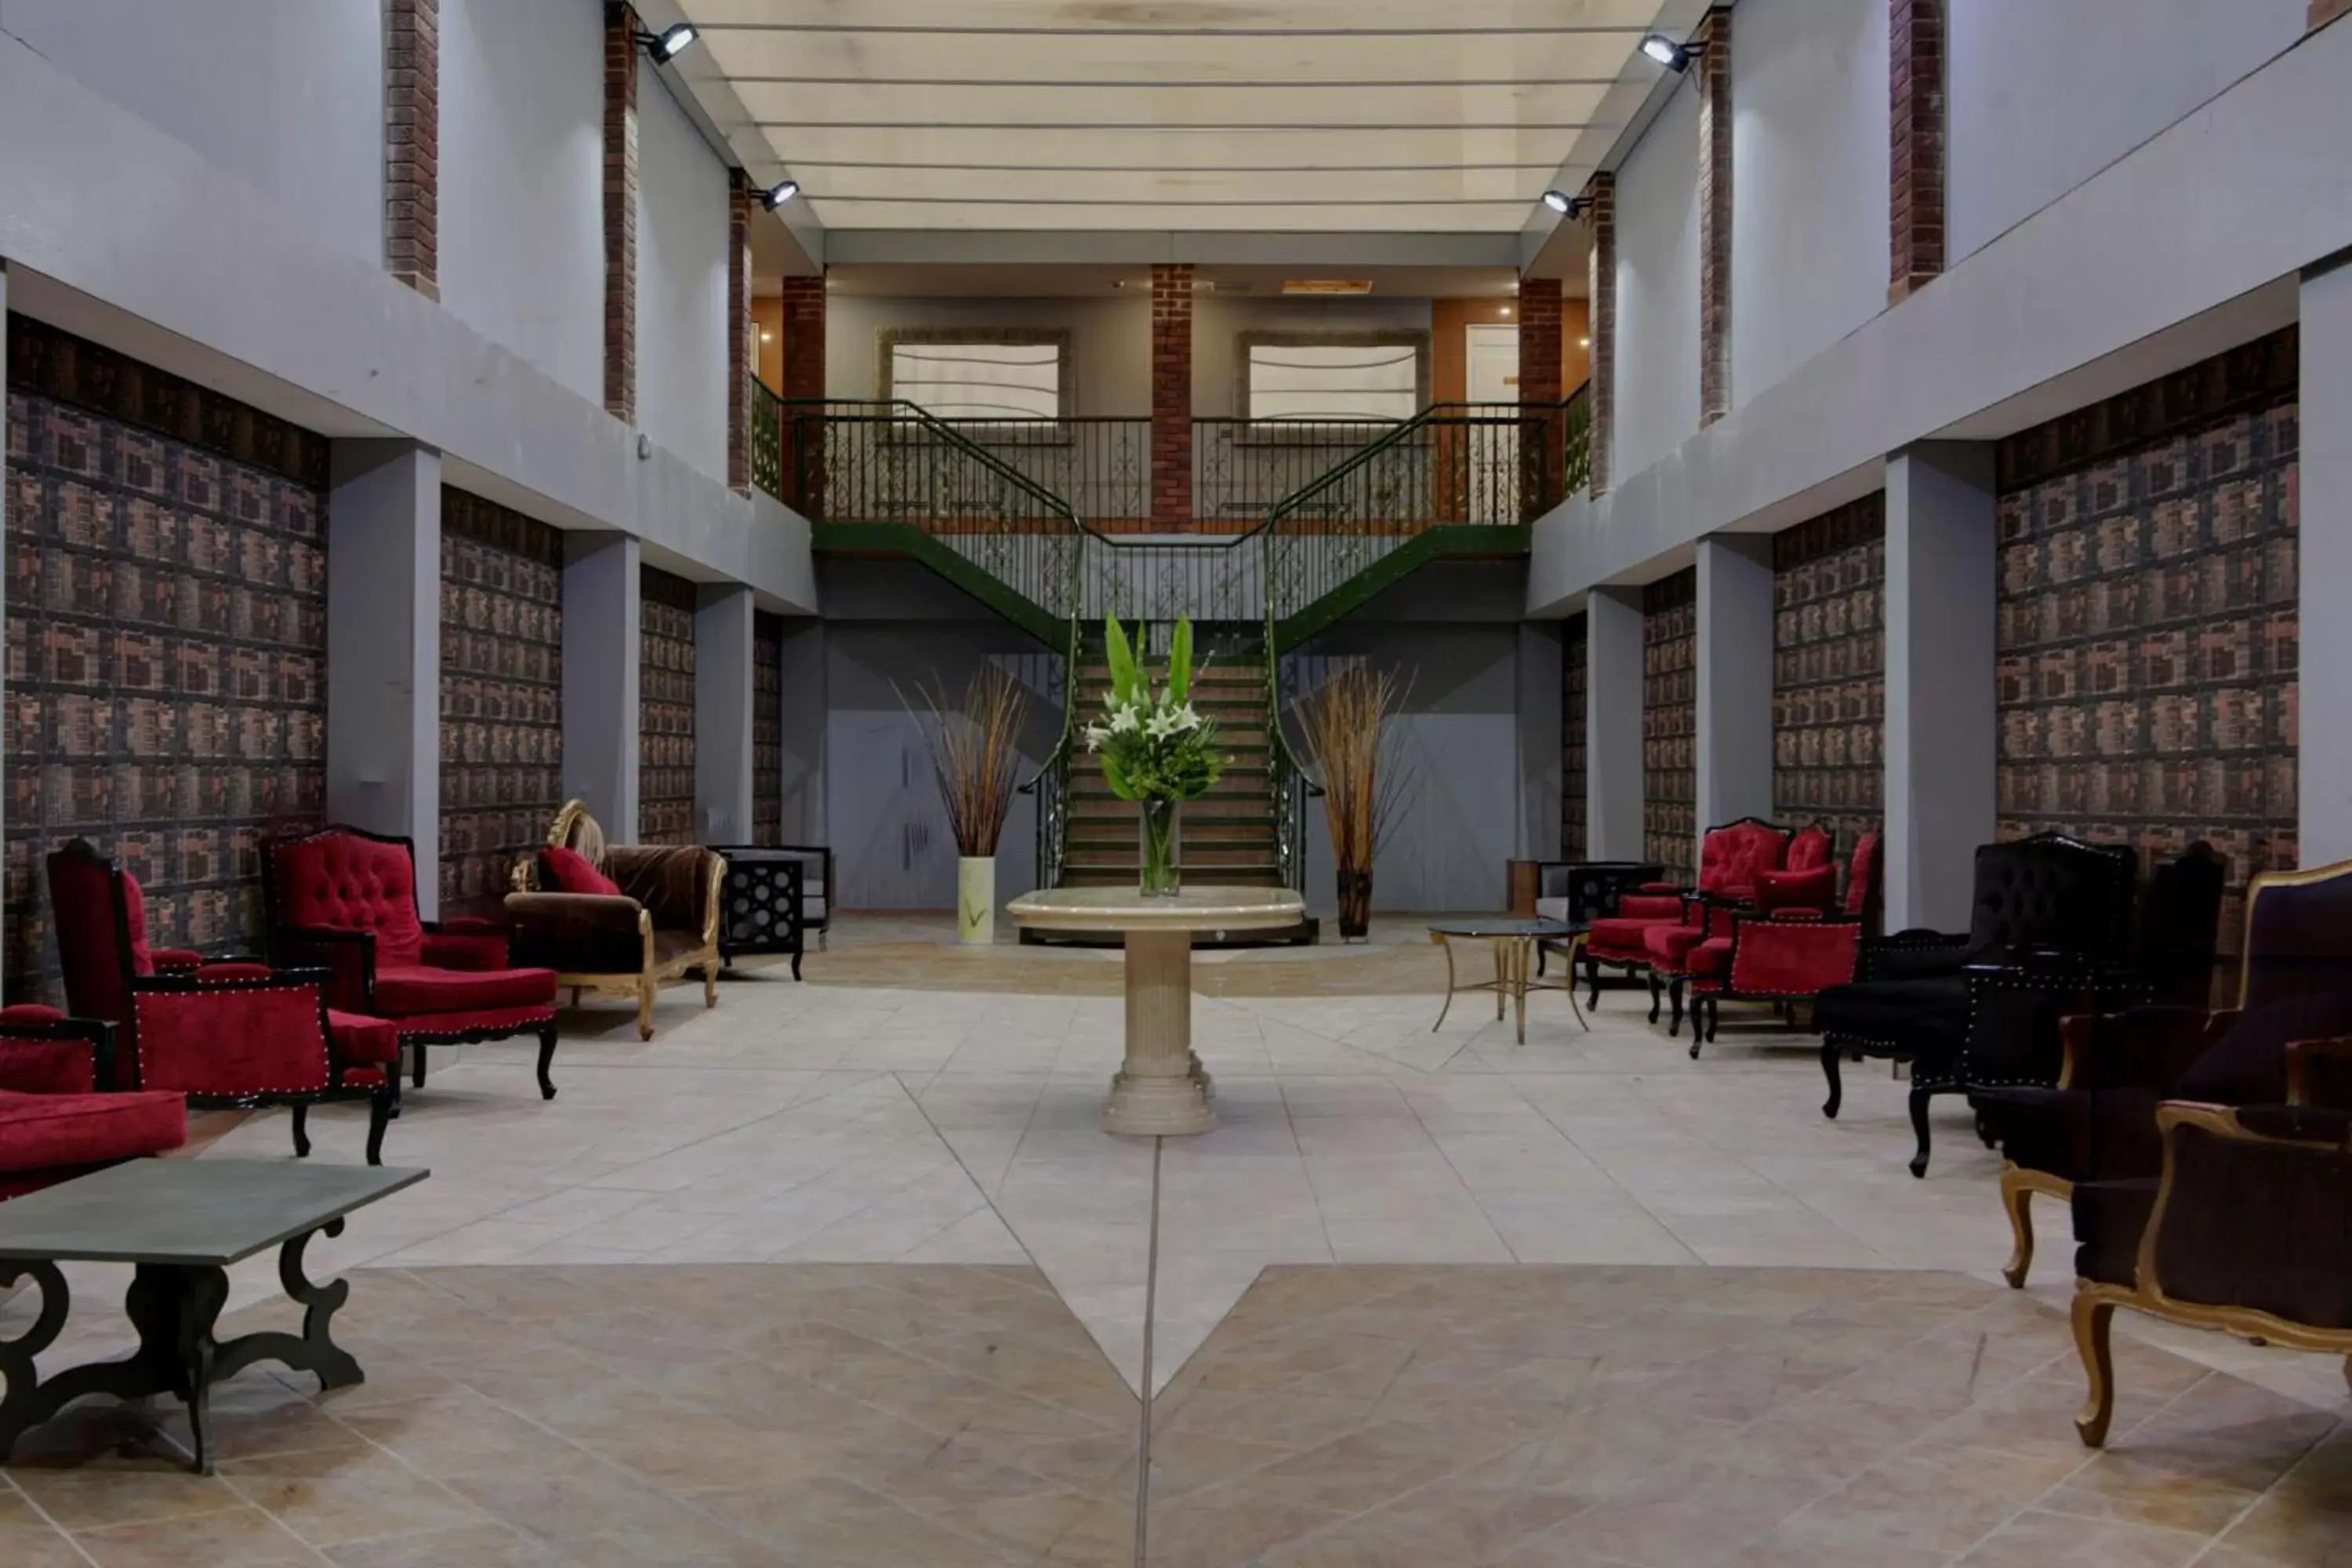 Lobby or reception in Risley Hall Hotel